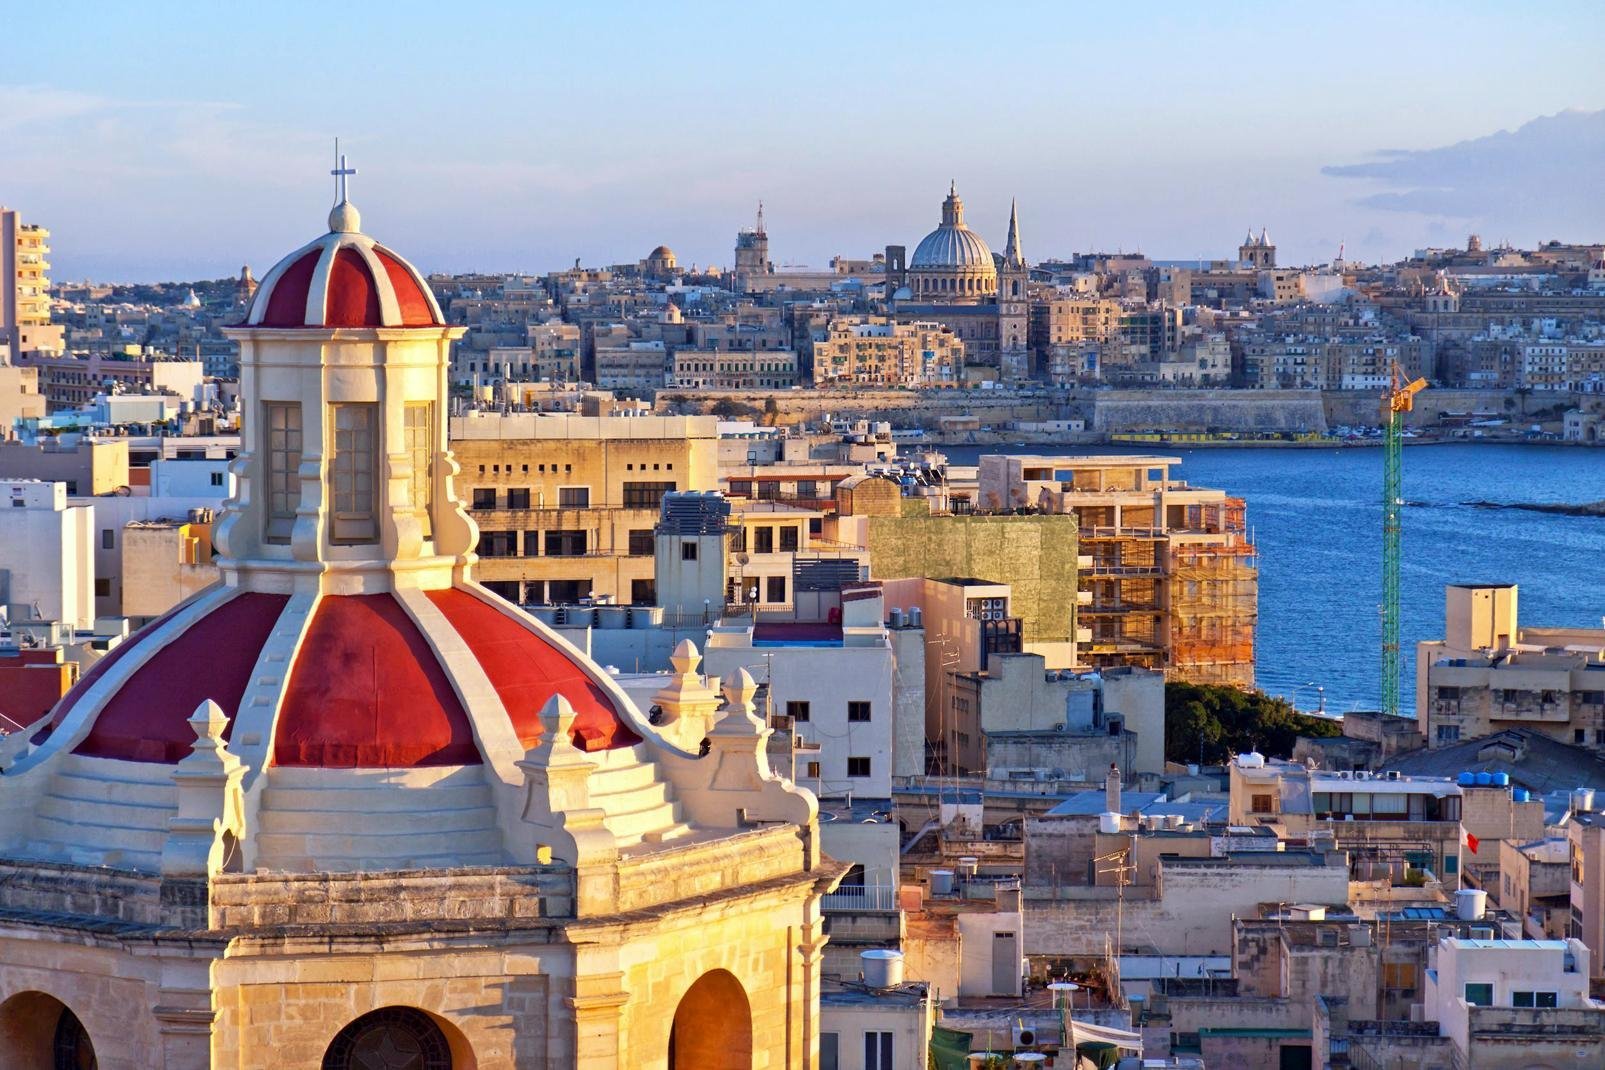 Un tempo affascinante porto di pesca, Sliema è diventata oggi uno degli agglomerati urbani maltesi più popolato. È orgogliosa di essere una stazione balneare di punta - nonostante l'assenza di spiagge di sabbia!

Sfortunatamente non resta gran che del passato storico della città, quando era il luogo di villeggiatura preferito dalla borghesia della Valletta.

Sliema è una città moderna che offre un ...